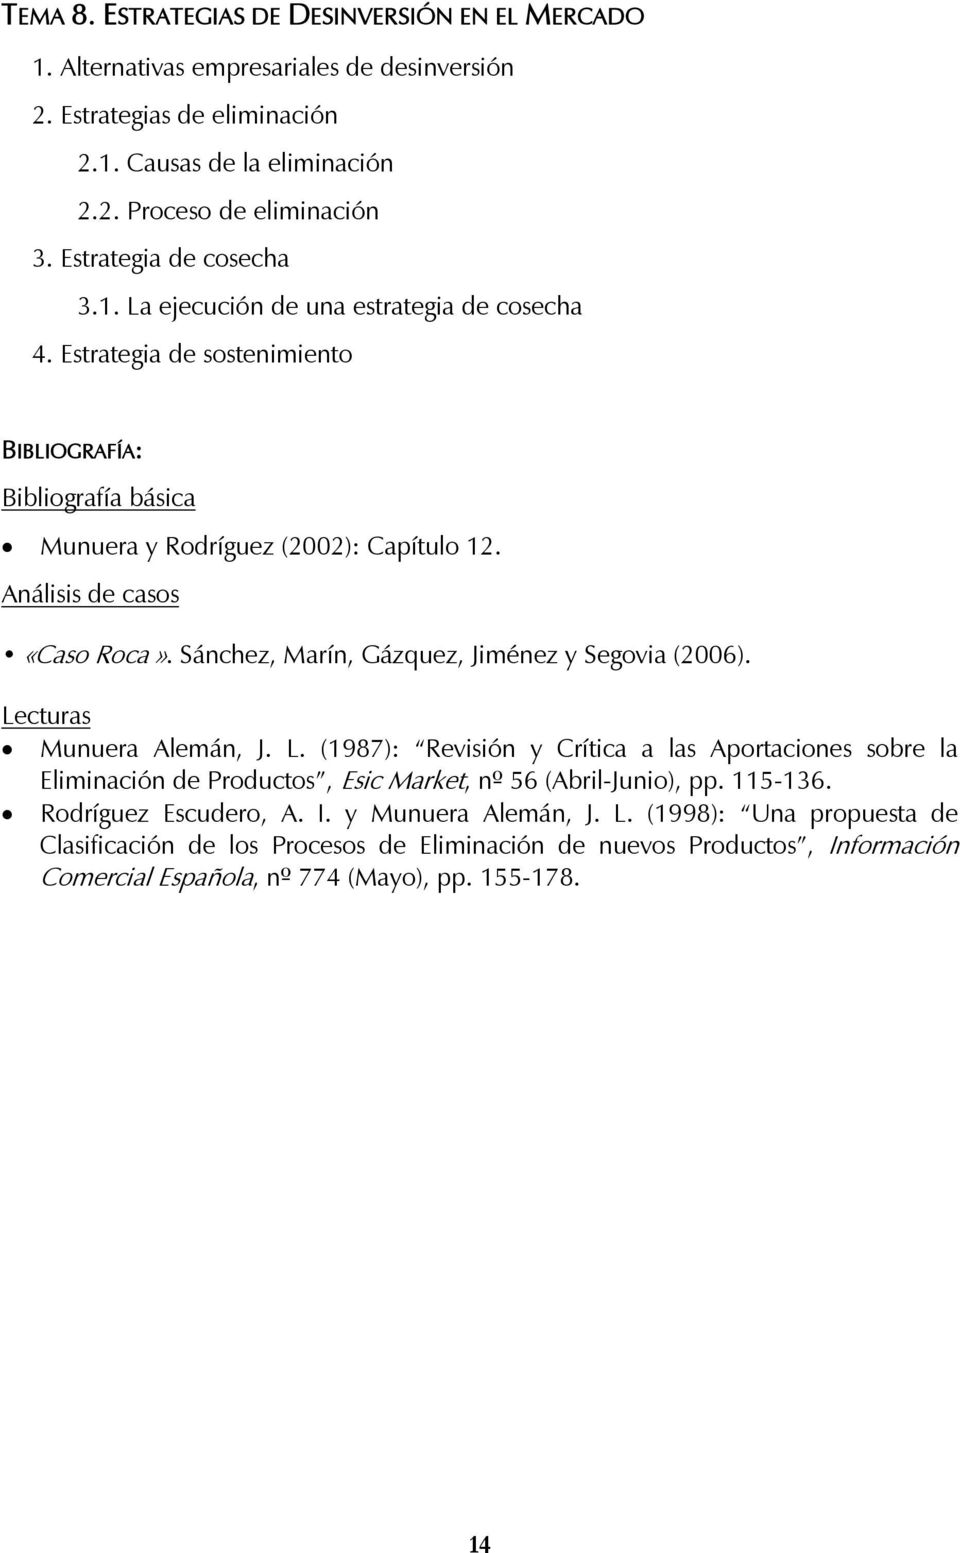 Sánchez, Marín, Gázquez, Jiménez y Segovia (2006). Munuera Alemán, J. L. (1987): Revisión y Crítica a las Aportaciones sobre la Eliminación de Productos, Esic Market, nº 56 (Abril-Junio), pp.